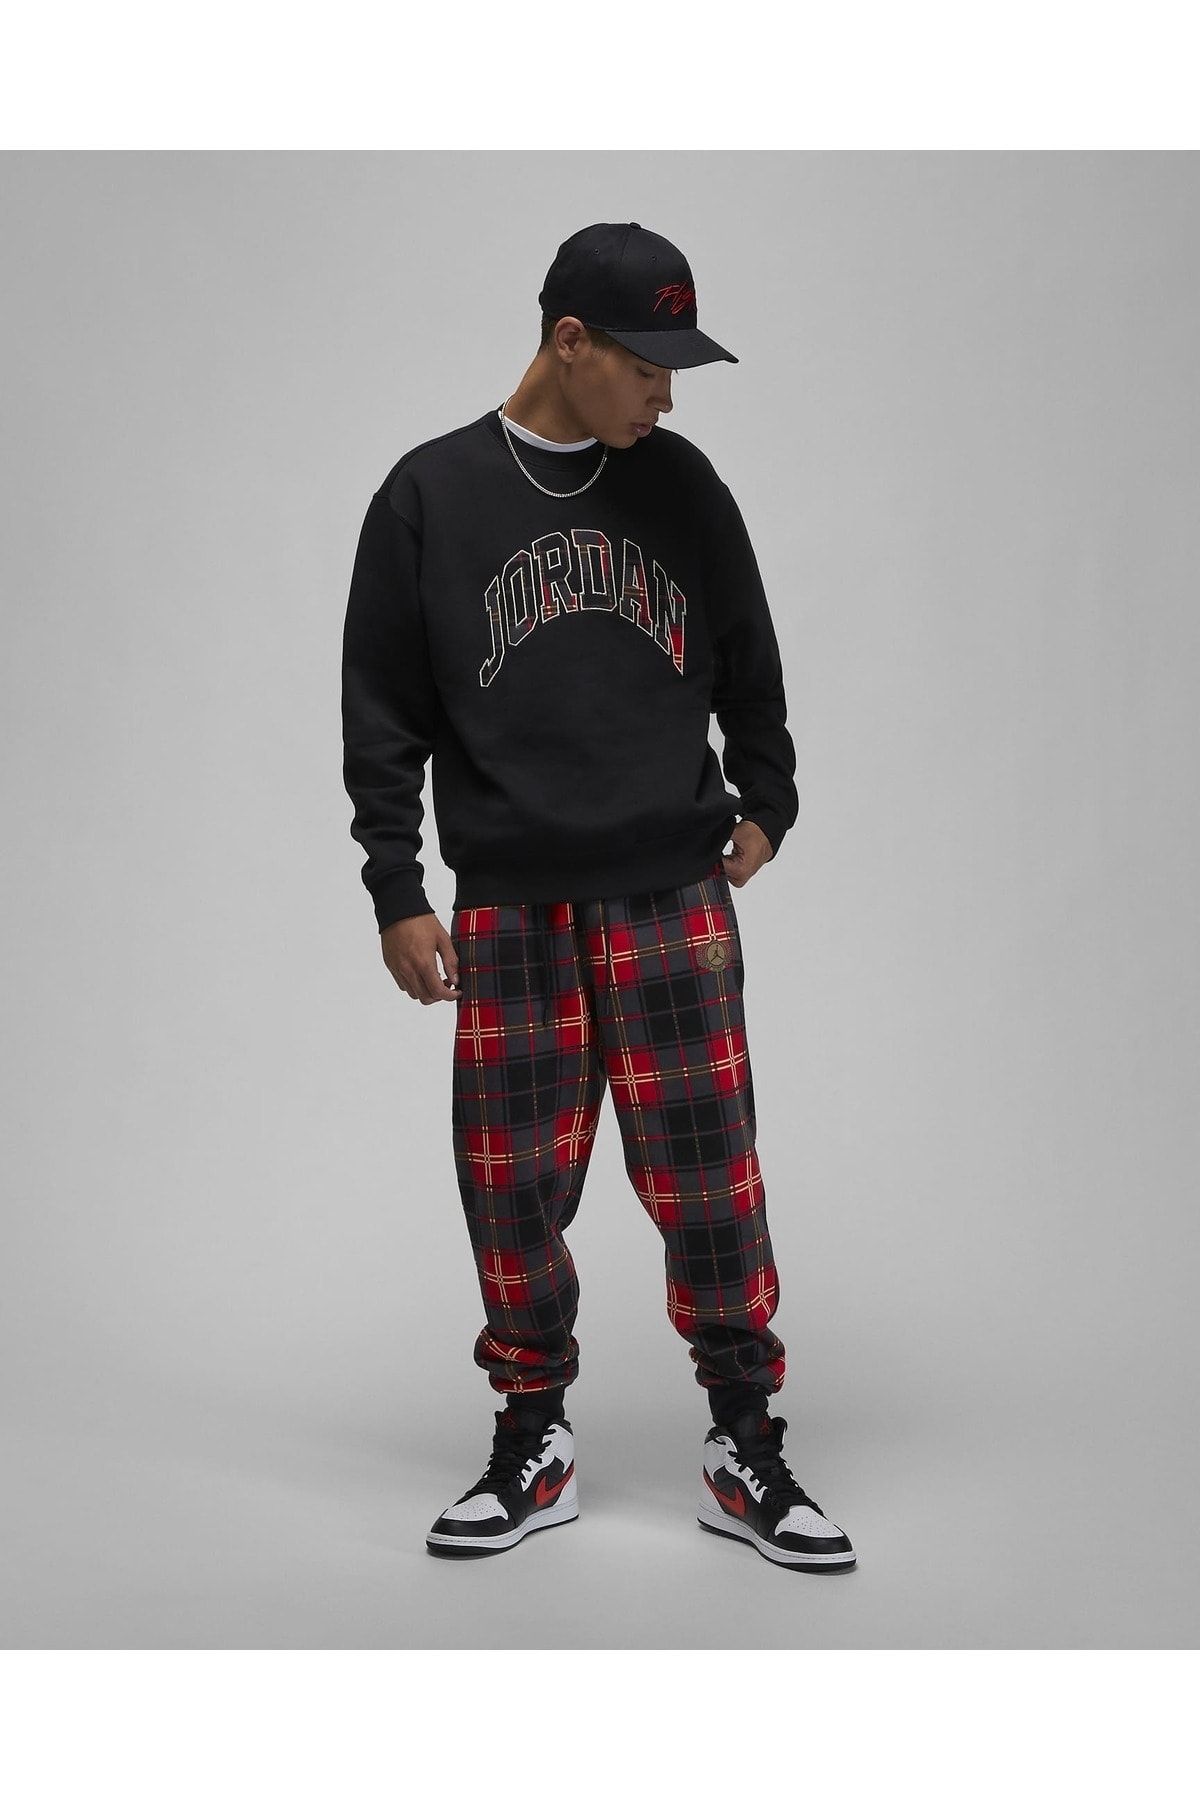 Nike Jordan Essential Holiday Men's Fleece Crew Top Sweatshirt - Trendyol